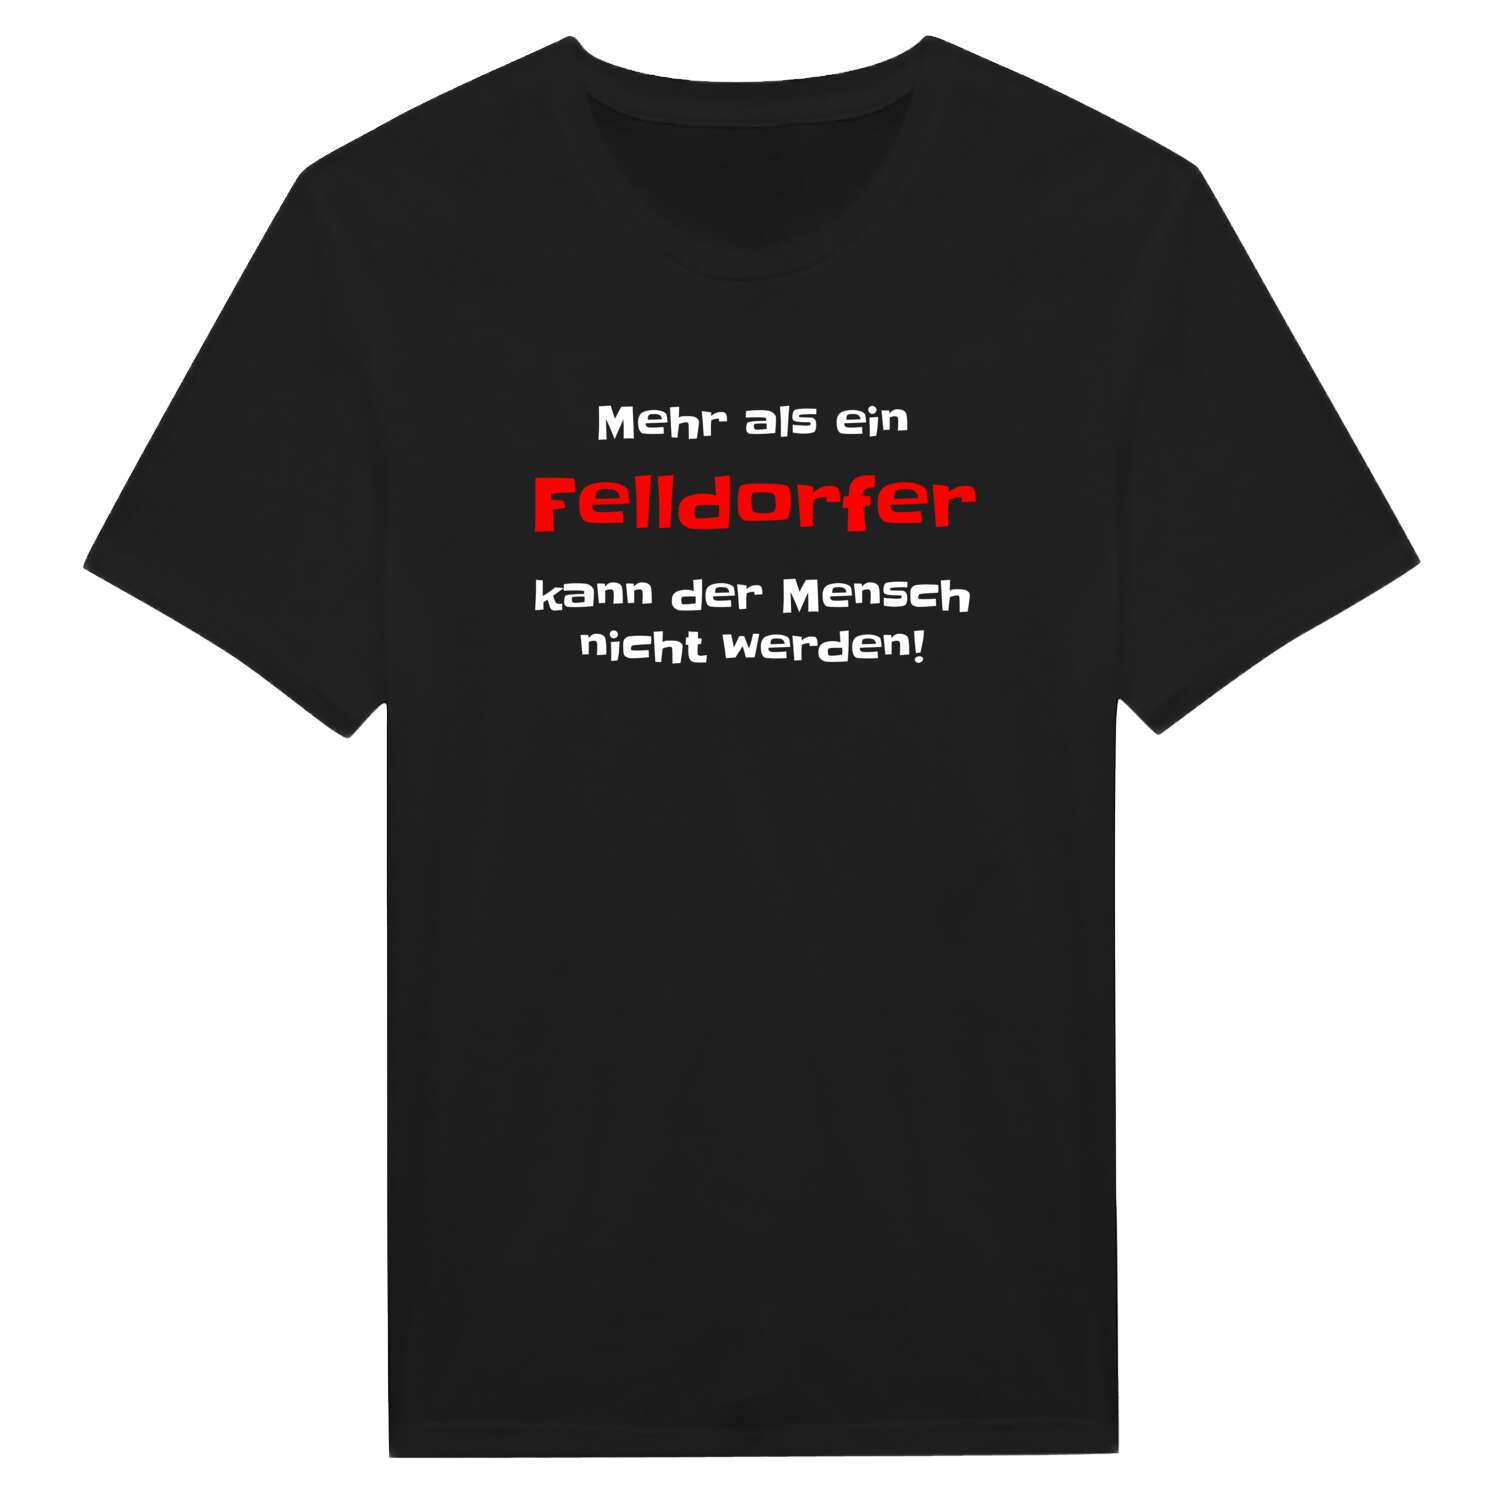 Felldorf T-Shirt »Mehr als ein«